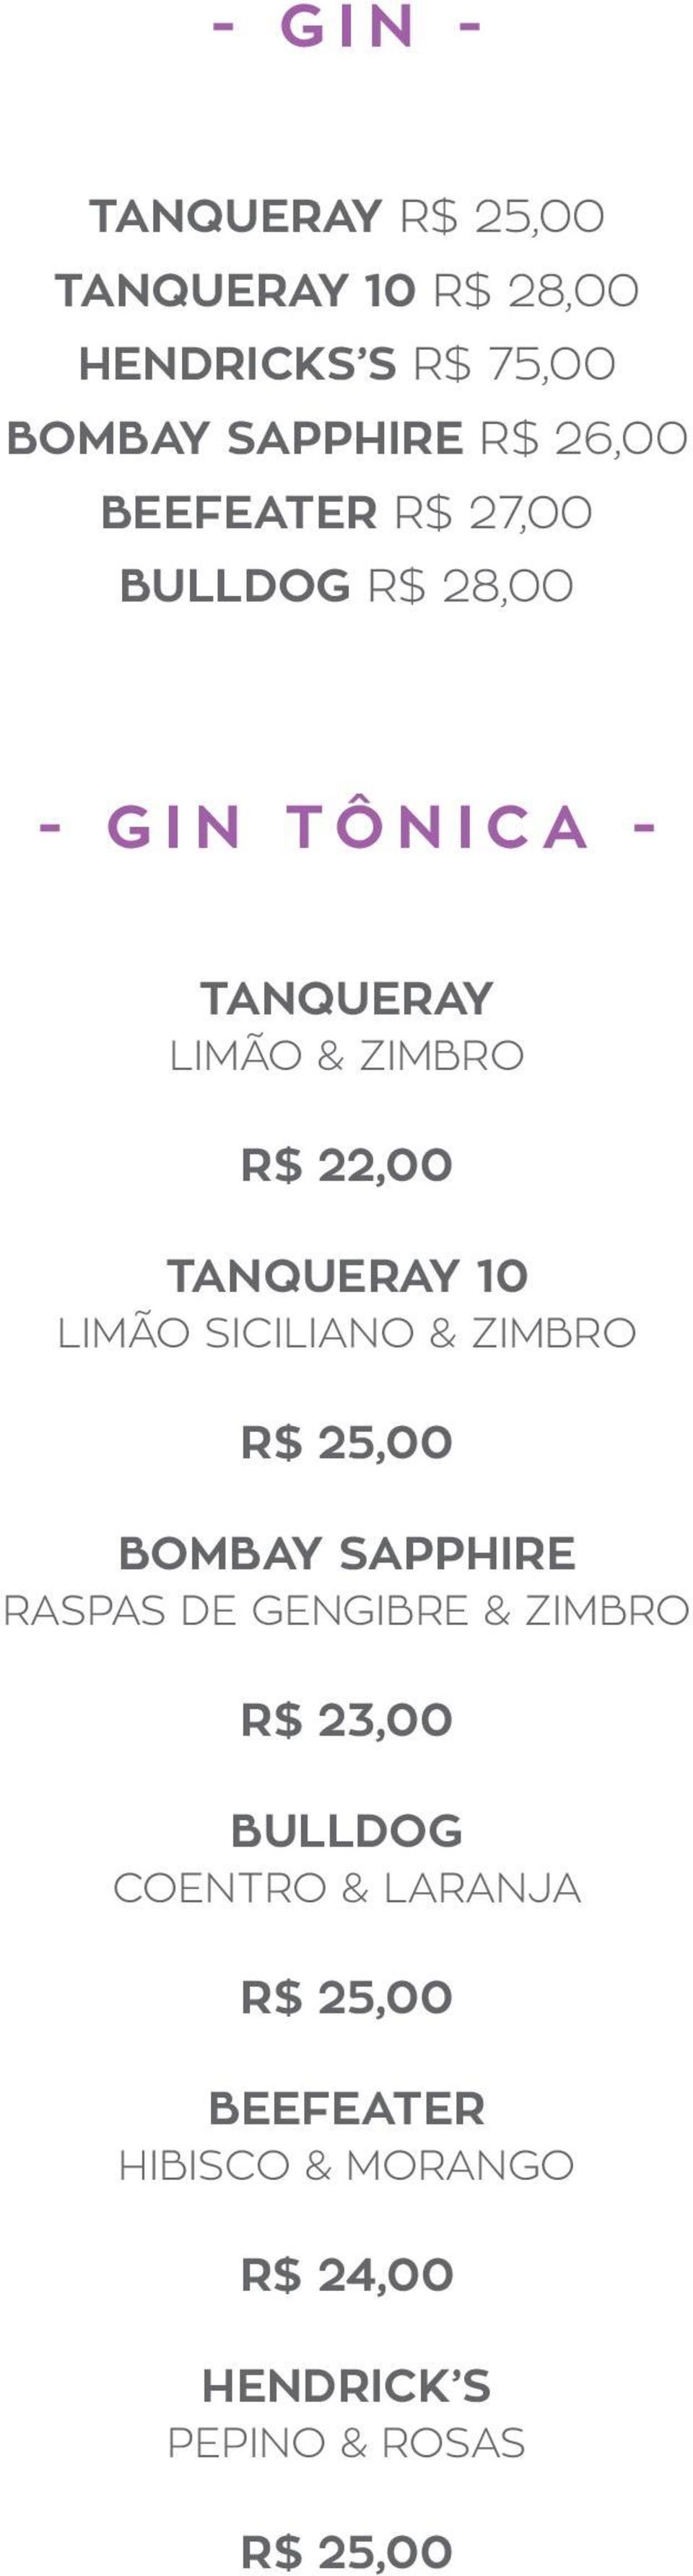 10 LIMÃO SICILIANO & ZIMBRO R$ 25,00 BOMBAY SAPPHIRE RASPAS DE GENGIBRE & ZIMBRO R$ 23,00